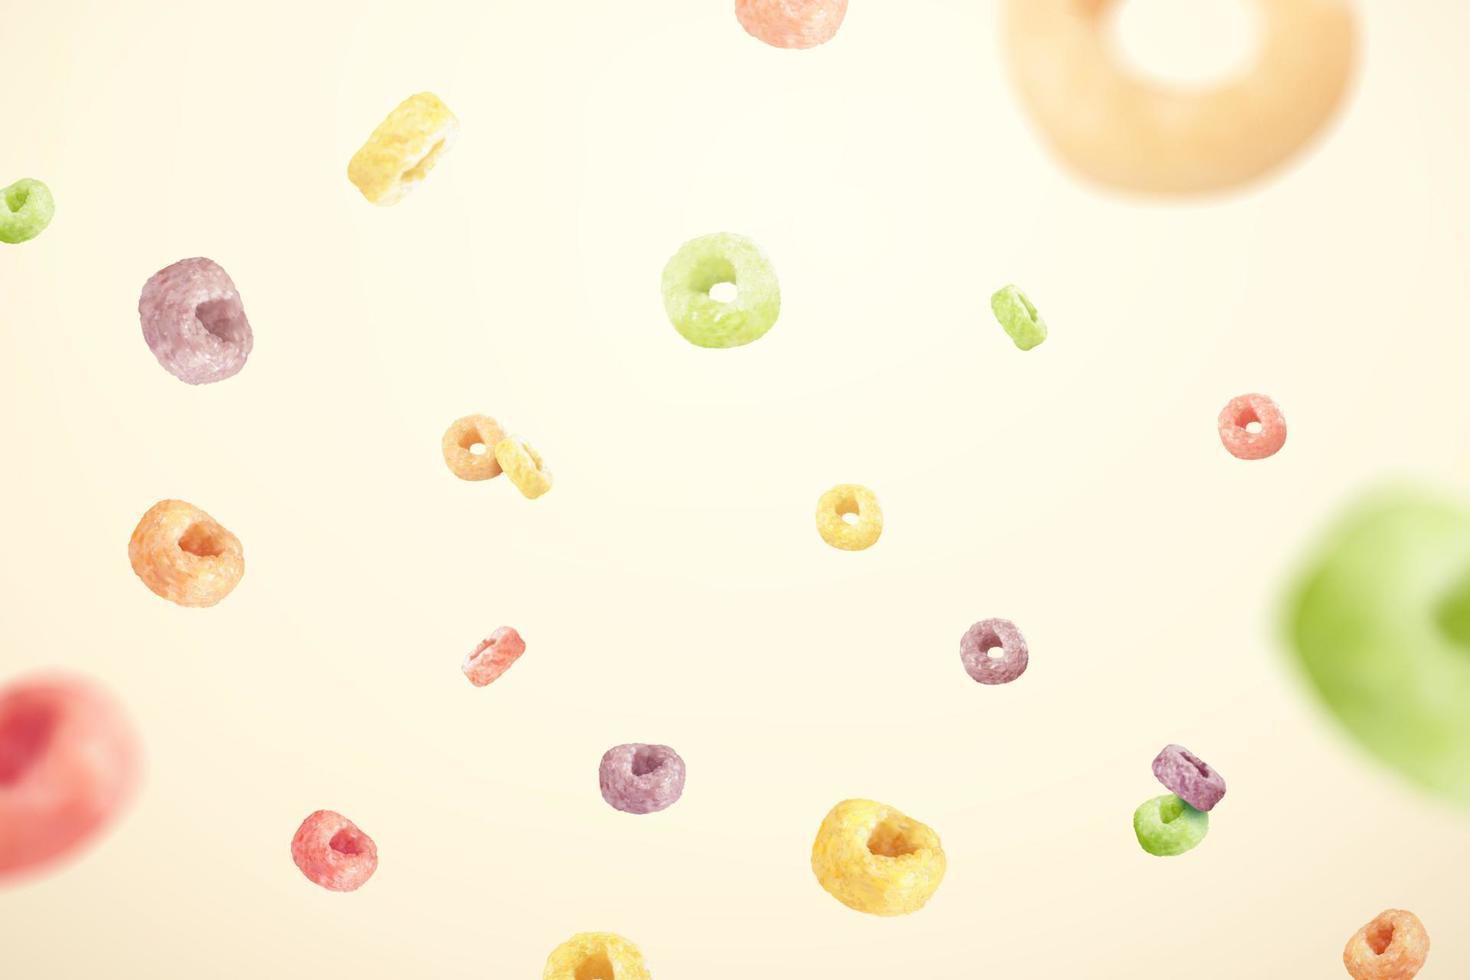 Projeto elemento do colorida anel cereais dentro 3d ilustração. cereal argolas do fresco fruta sabores vôo em bege cor fundo. vetor